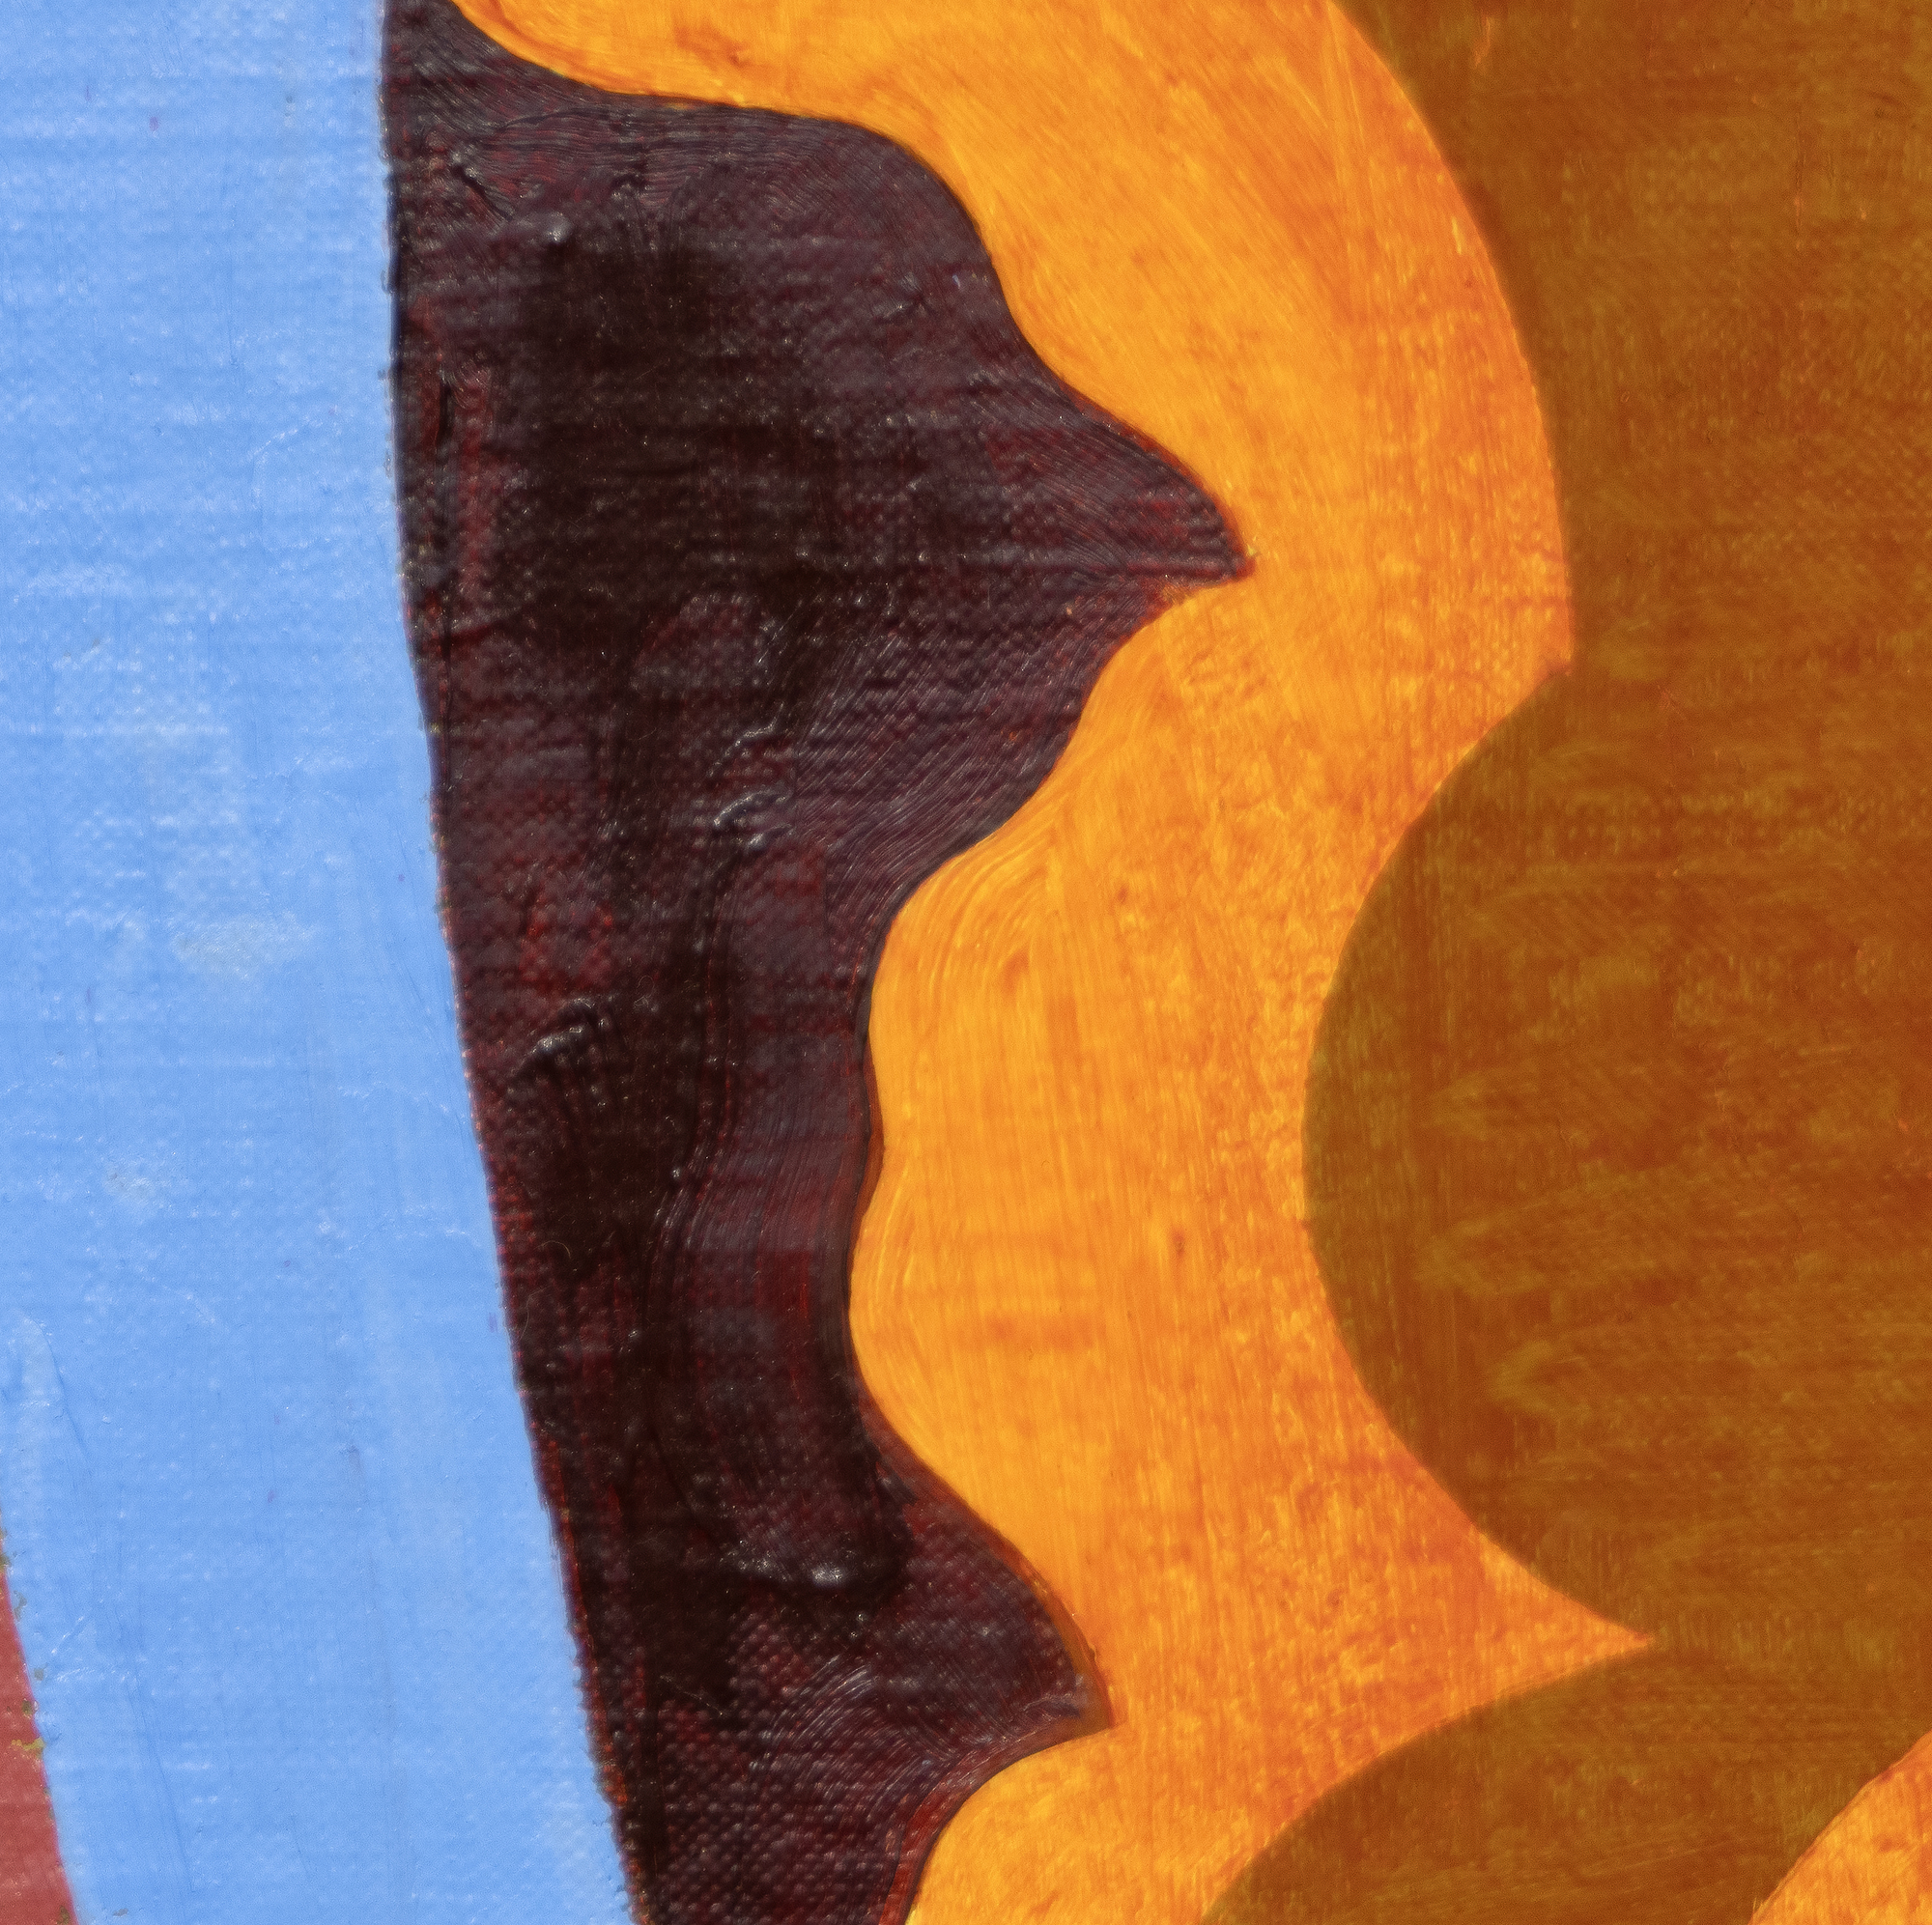 ولد توماس نزوكوفسكي في عام 1944، وأنشأ لوحات صغيرة غنية الثراء تعكس التأثيرات الثنائية لدعاة التعبير التجريديين ولاجئي باوهاوس الذين درس معهم في اتحاد كوبر. باستخدام فرشاة صغيرة ، ويشمل التعامل معه كشط وفرك قبالة الطلاء بطرق تسجيل في العمل النهائي. طور مفردات مميزة واسعة النطاق تنشر أشكالًا هندسية تشبه الأشكال الحيوية في أنظمة ألوان متنوعة ومجموعة واسعة من الجمعيات: أرضيات البلاط ، إلى مجموعات الخلايا ، إلى الهندسة المعمارية والفضاء الخارجي. في كثير من الأحيان ، يتم تقطيرها من ذكرياته وتجاربه الخاصة. نوزكوفسكي على هذه اللوحة المحددة (بدون عنوان، 1994) قائلاً إنها تعكس انبهاره بالمشاهد الأسطورية المرسومة على لوحات الصدر الكاسونية الناطورة في عصر النهضة. وقال انه نطق أفضل واحد من ثلاثة أو أربعة 15 "× 30" لوحات من هذه السلسلة. تم التعامل مع Nozkowski لسنوات عديدة من قبل معرض بيس. توفي في عام 2019.